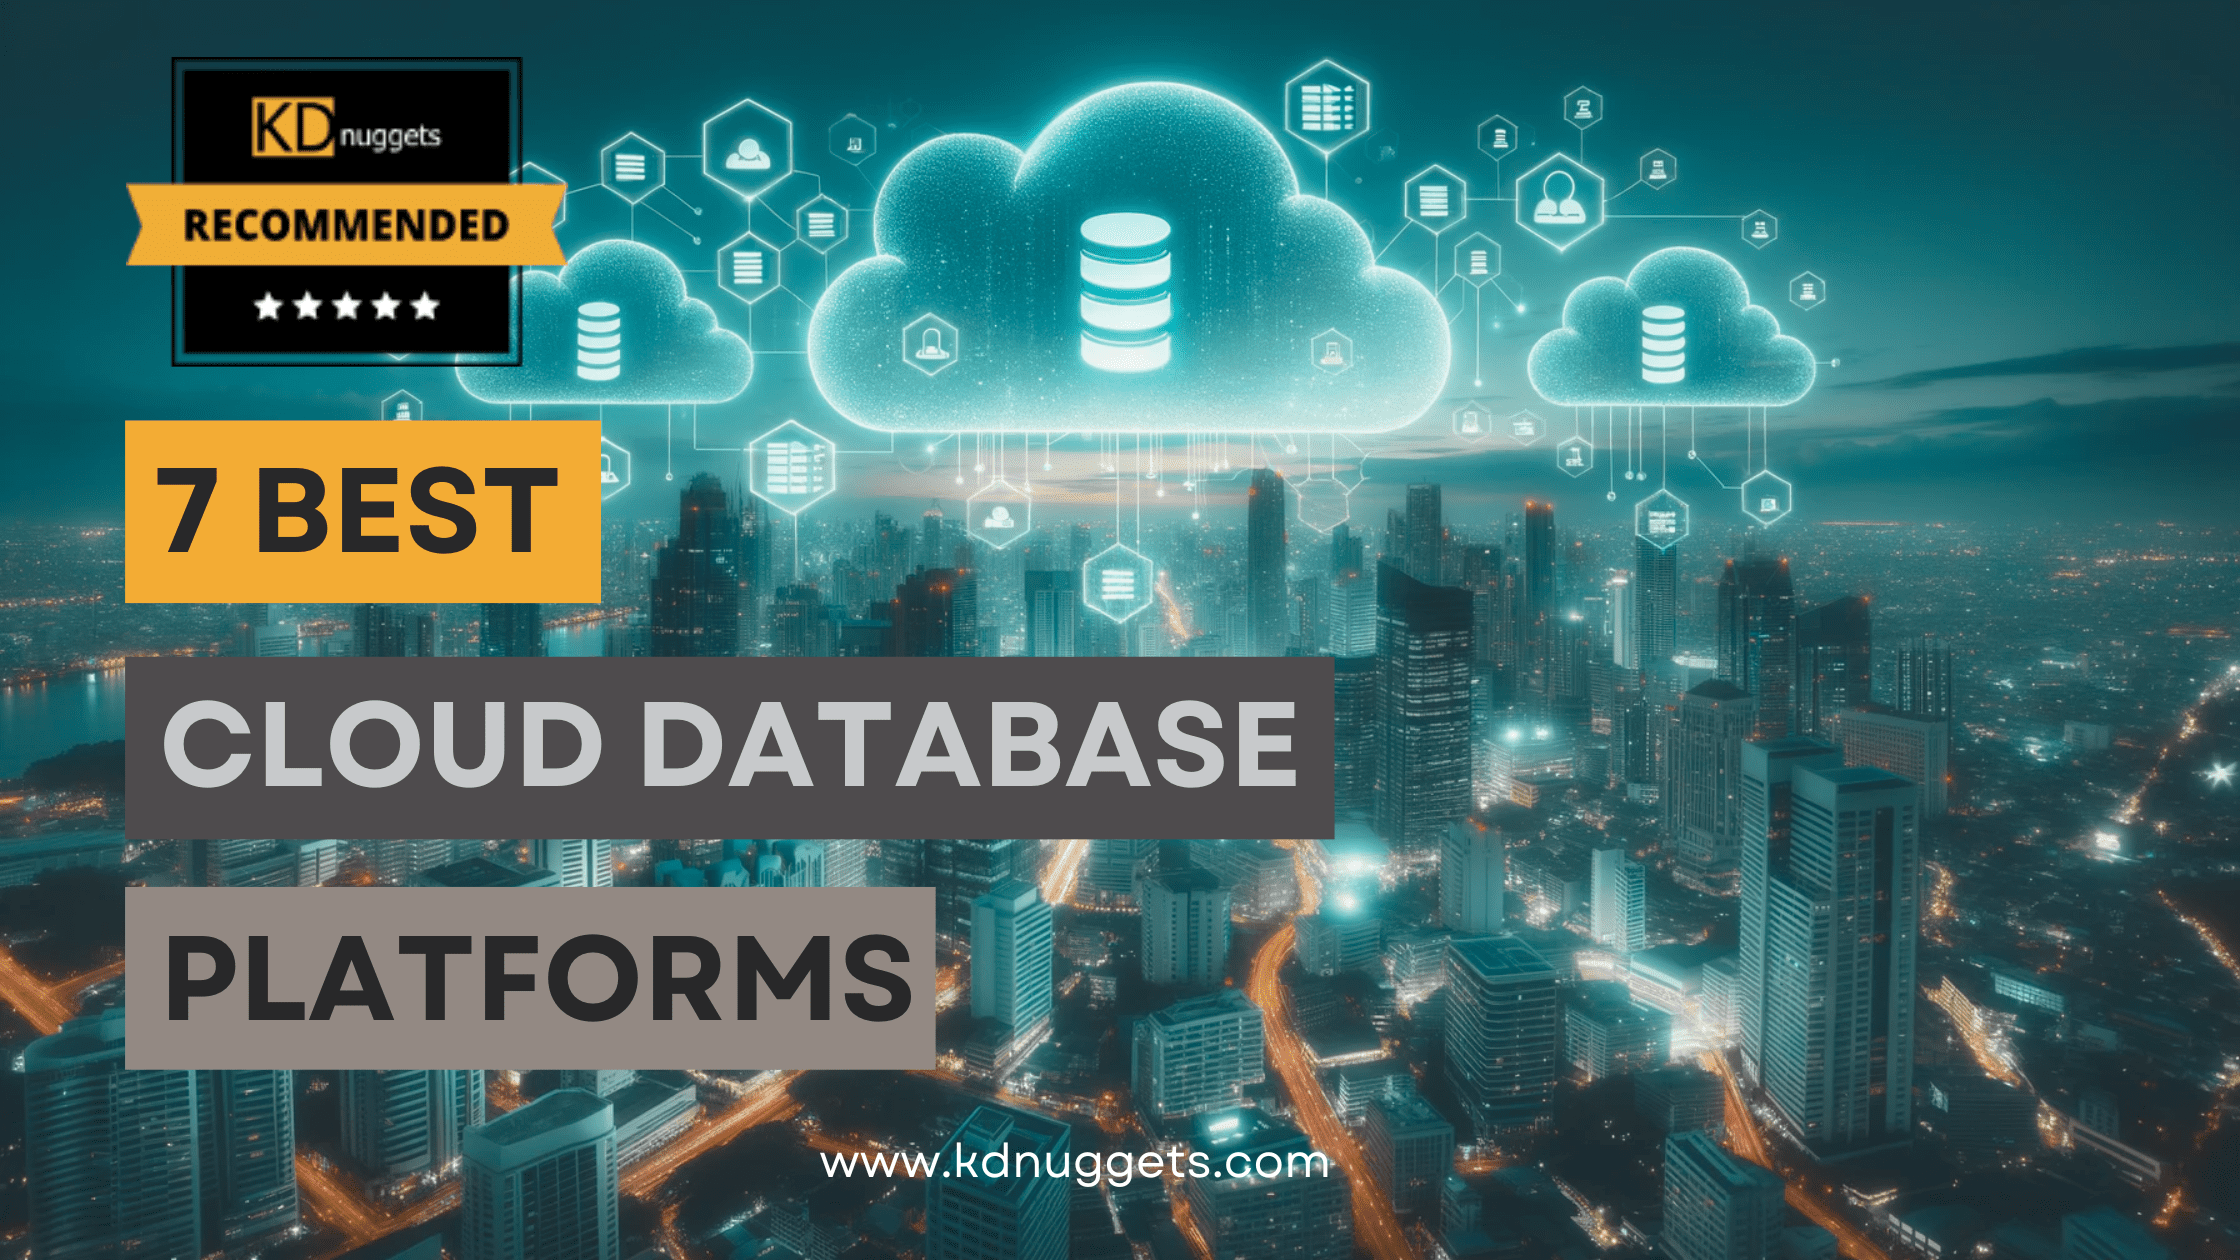 7 Best Cloud Database Platforms - KDnuggets